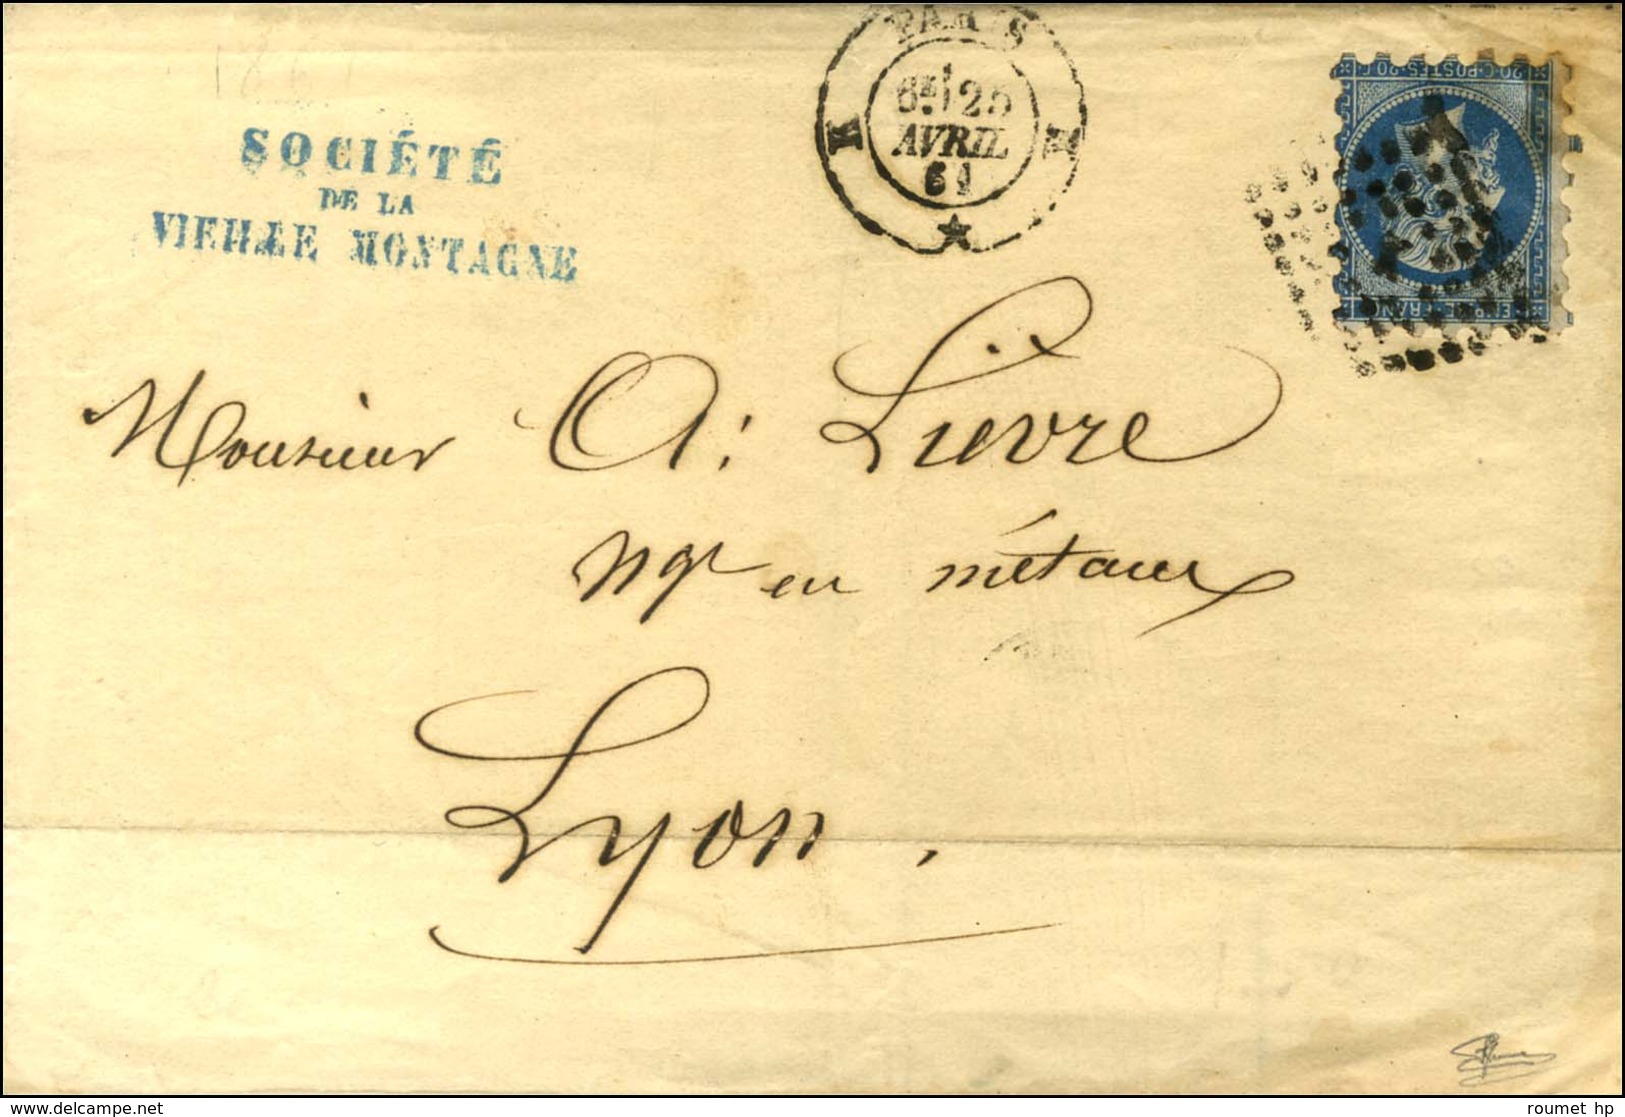 Losange K / N° 14 Type 1 Piquage Susse Càd K PARIS K. 1861. - TB. - 1853-1860 Napoléon III